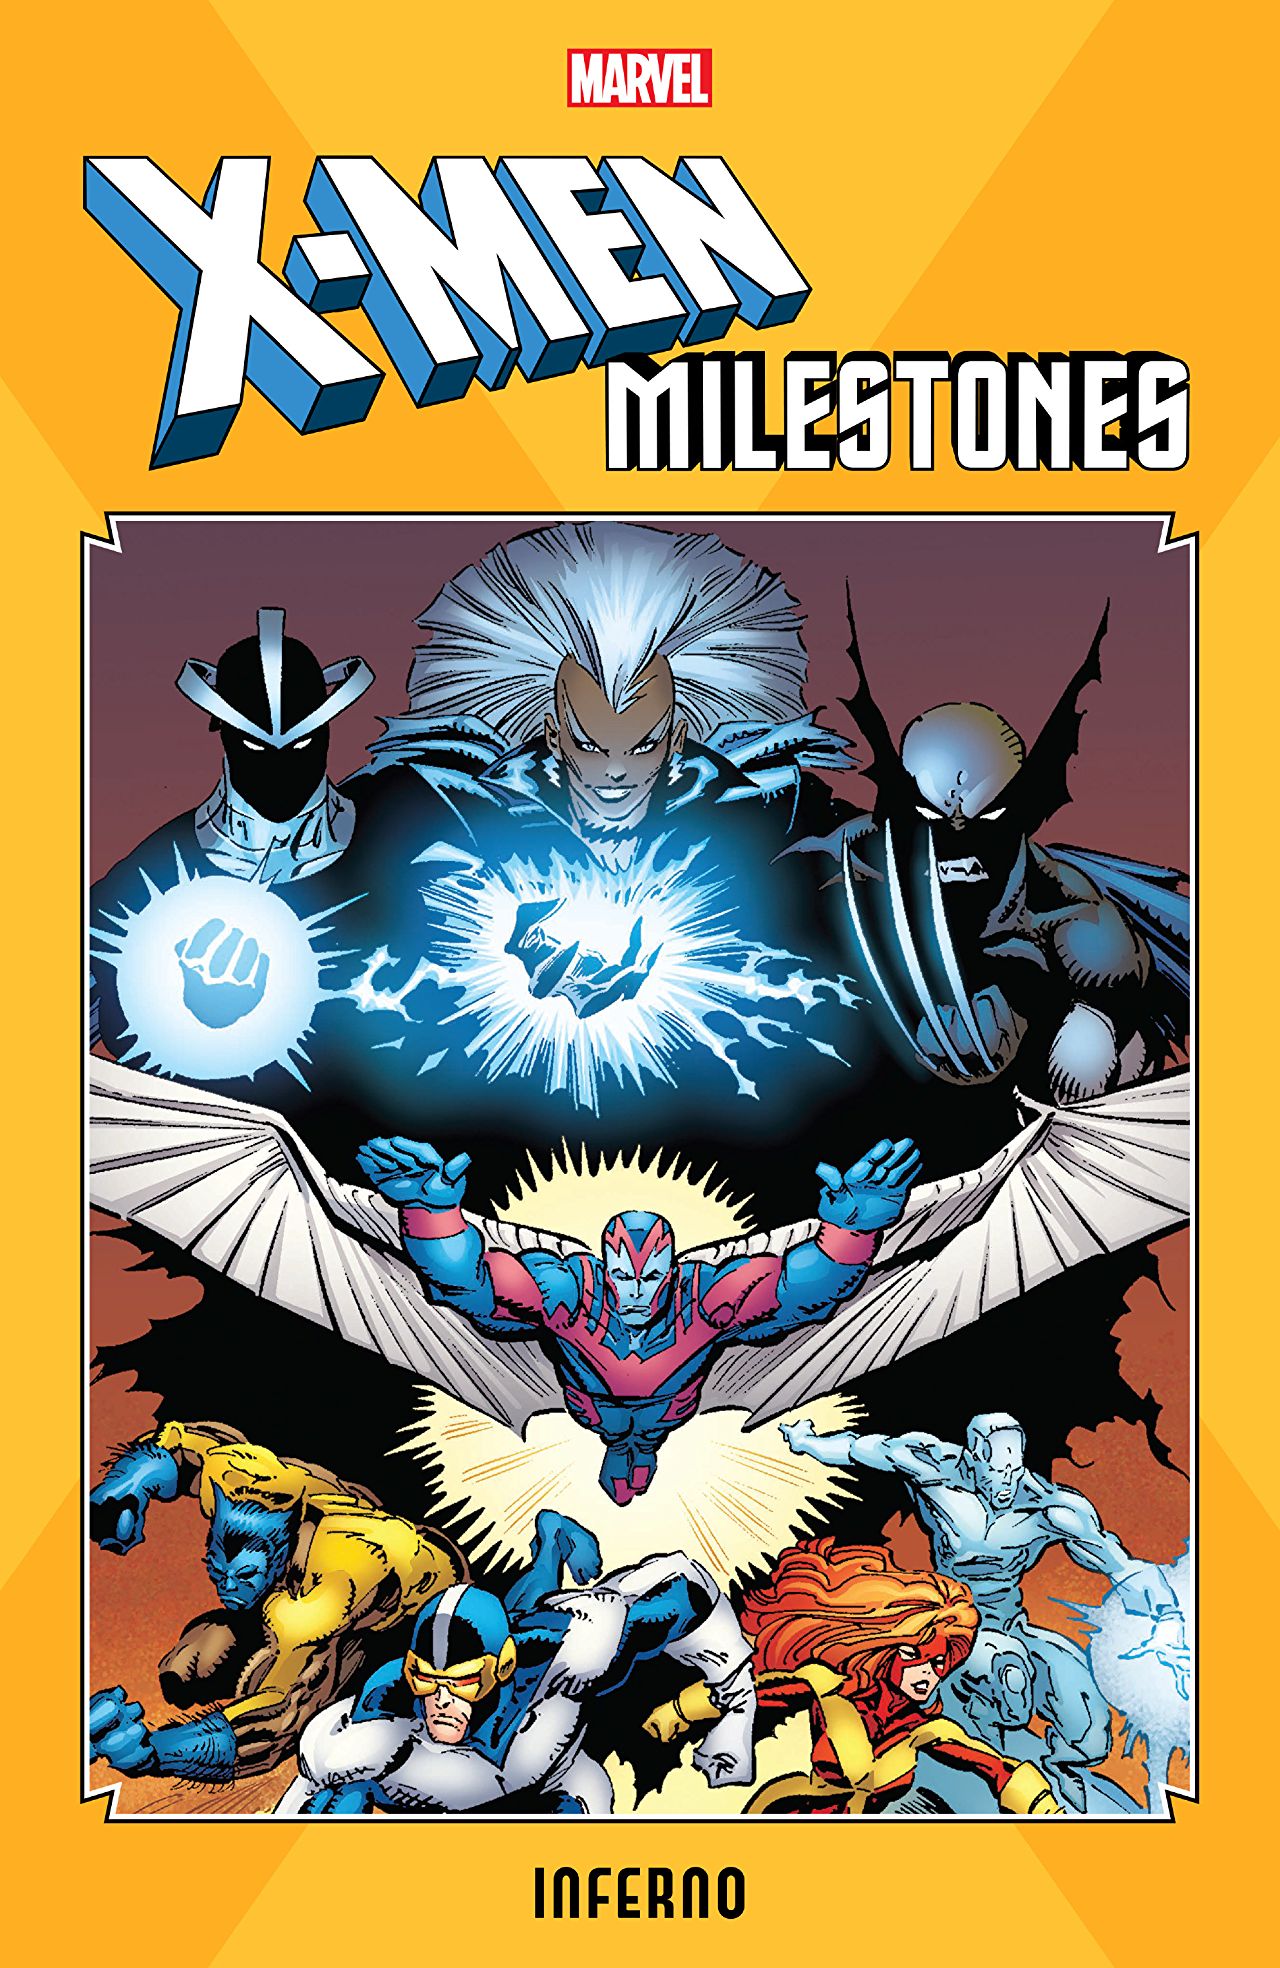 X-Men Milestones: Inferno TPB review